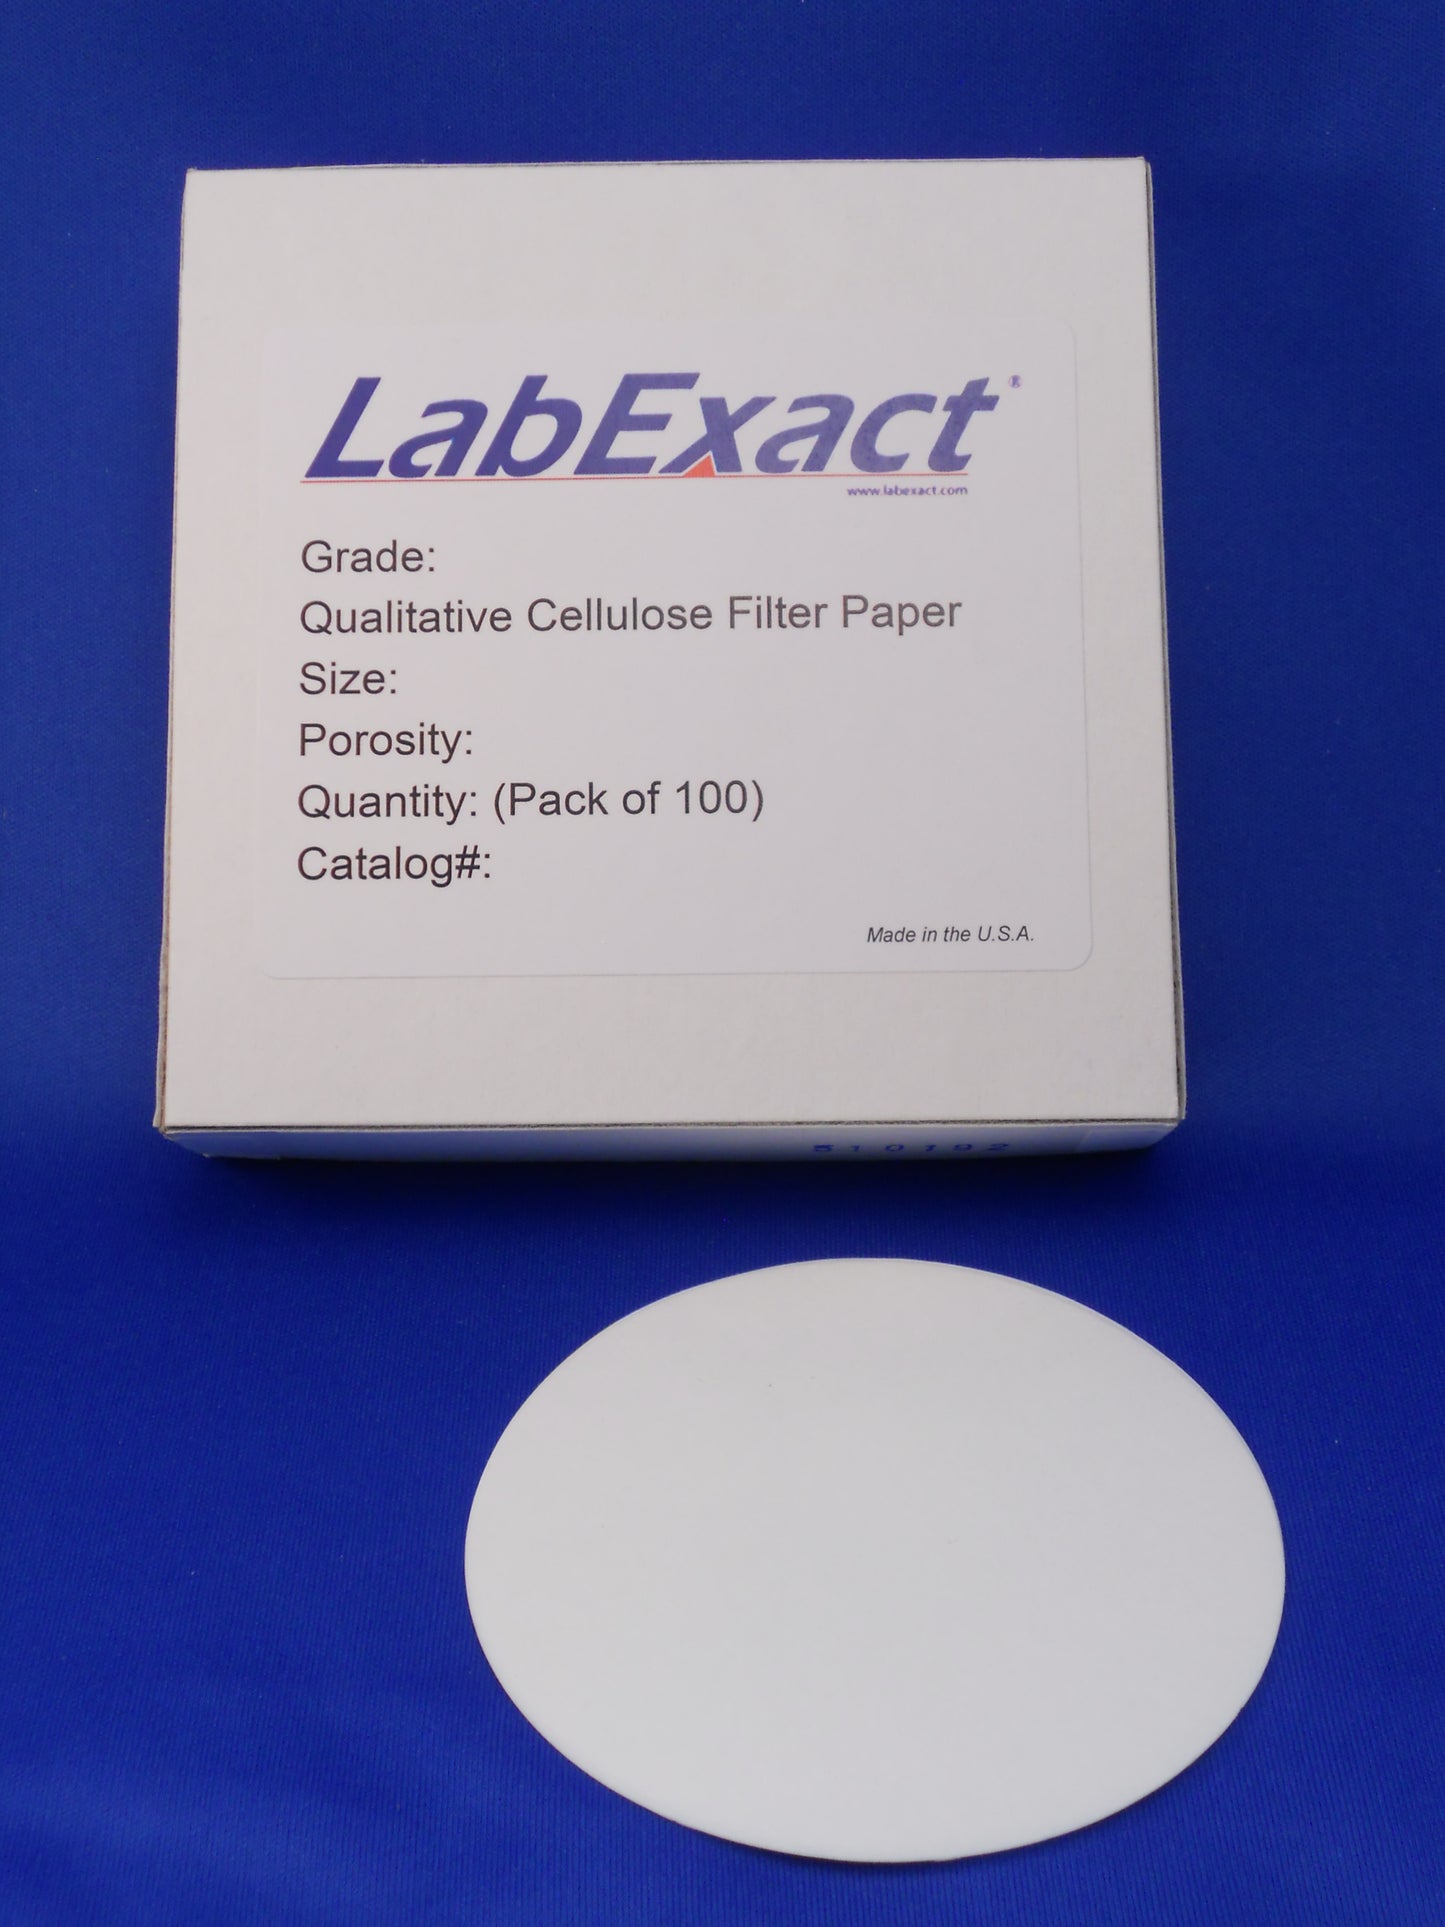 Grade CFP2 Qualitative cellulose filter paper, 8µm retention, medium-slow flow